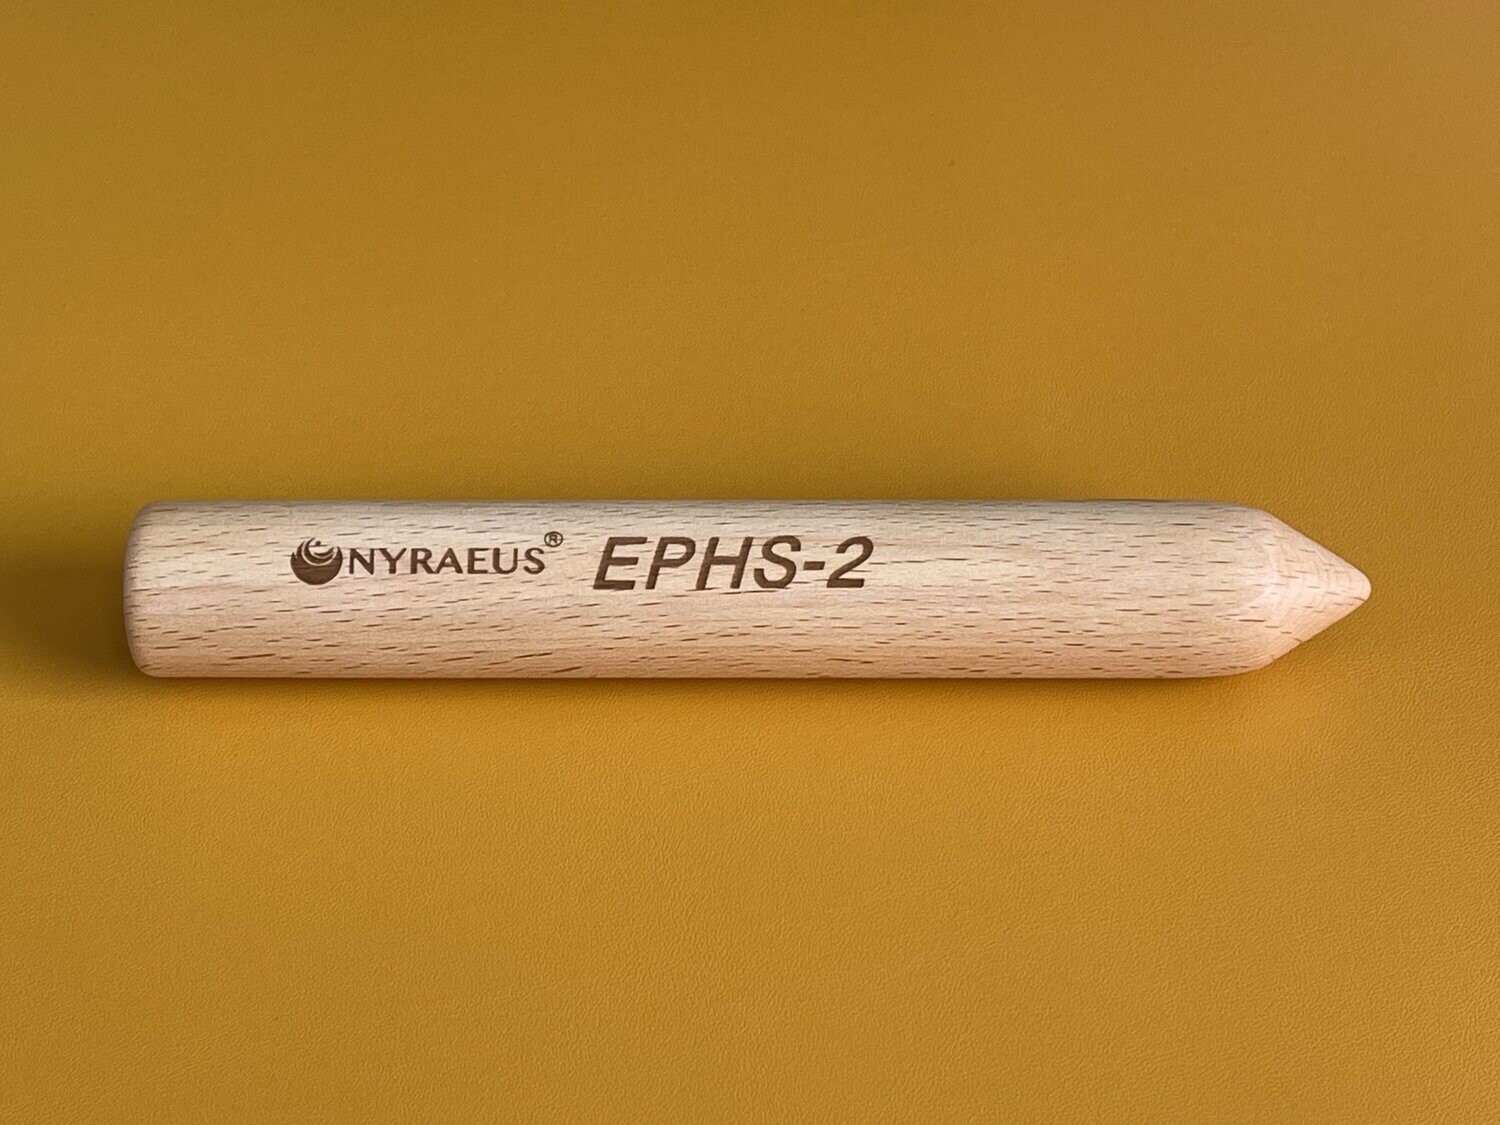 EPHS-2 (Energy-Pen-Health-System)